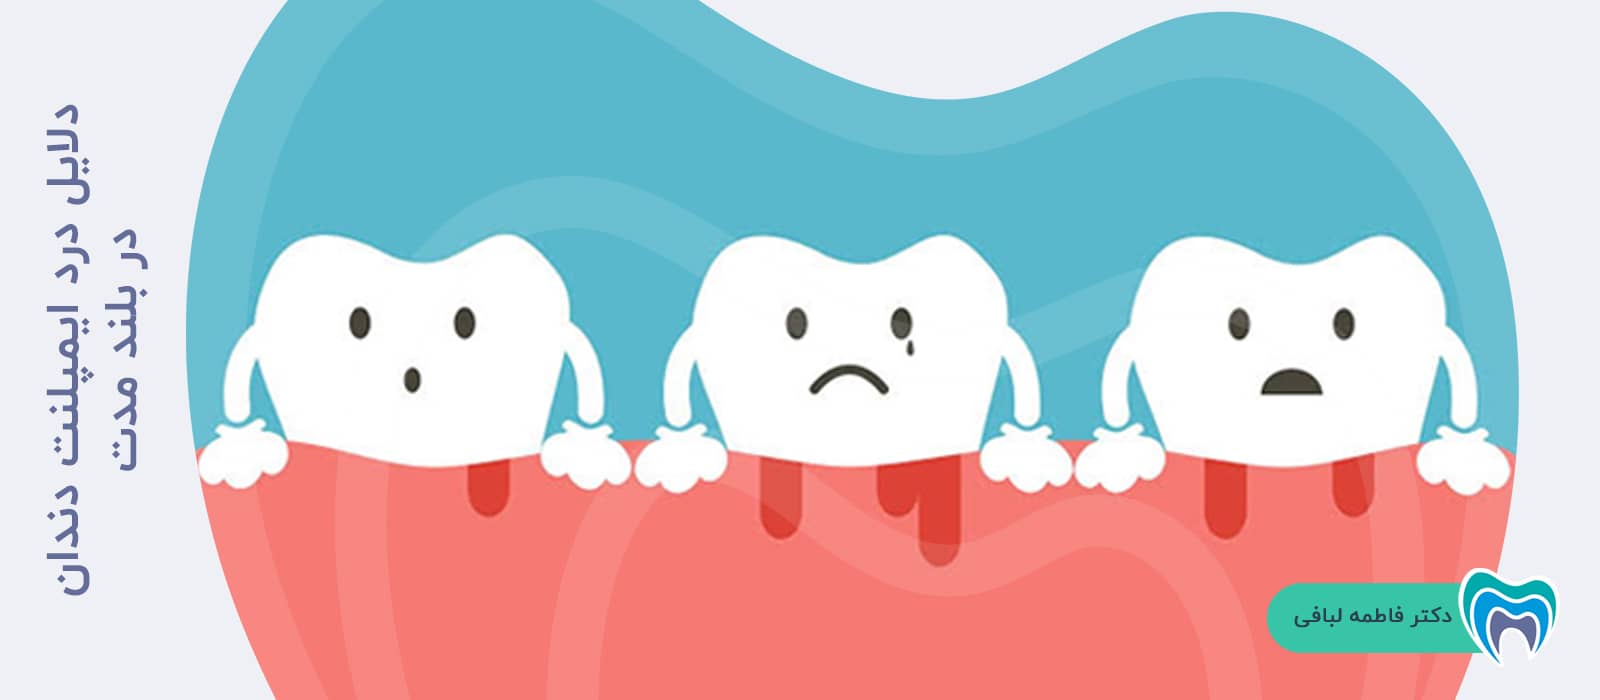 دلایل درد ایمپلنت دندان در بلند مدت